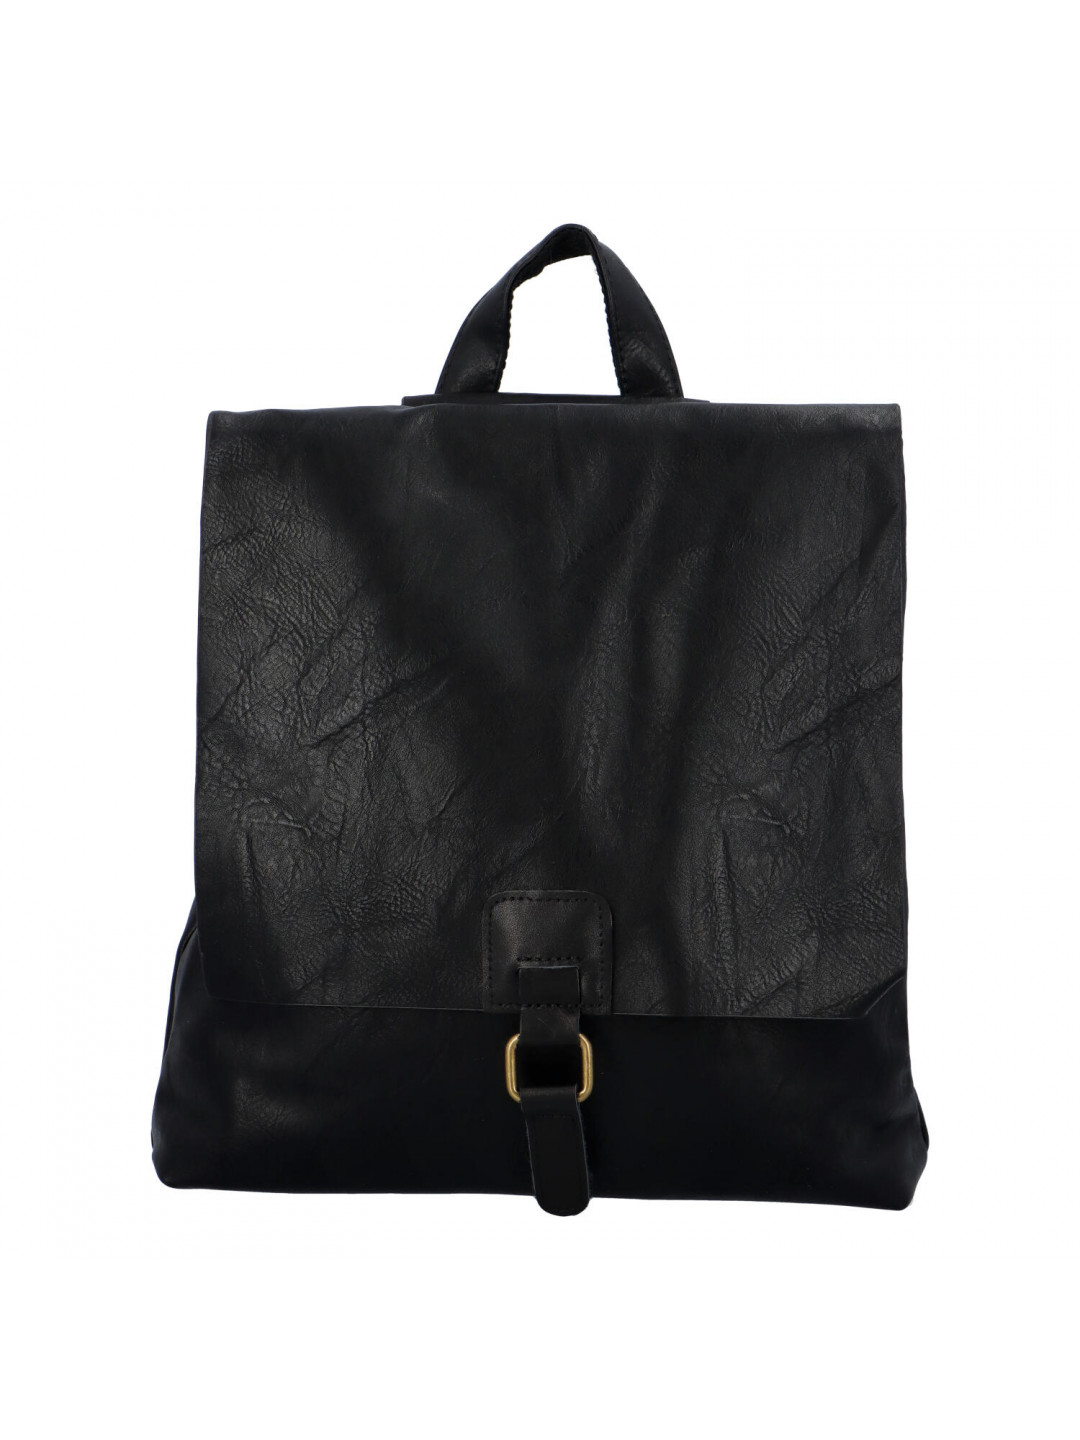 Dámský městský batoh černý – Paolo Bags Vivet